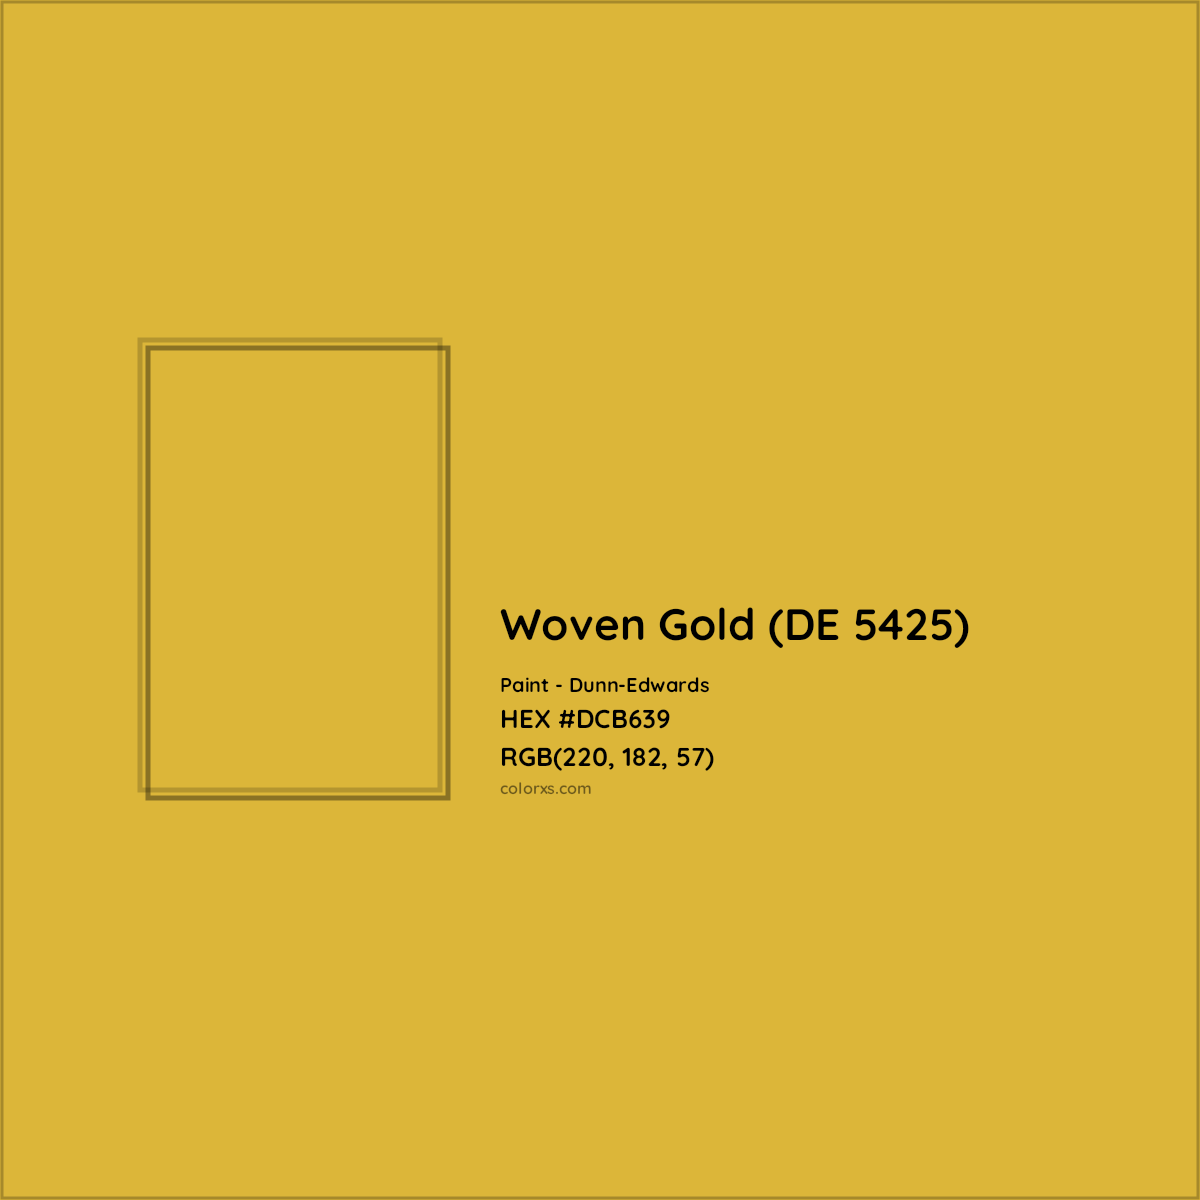 HEX #DCB639 Woven Gold (DE 5425) Paint Dunn-Edwards - Color Code